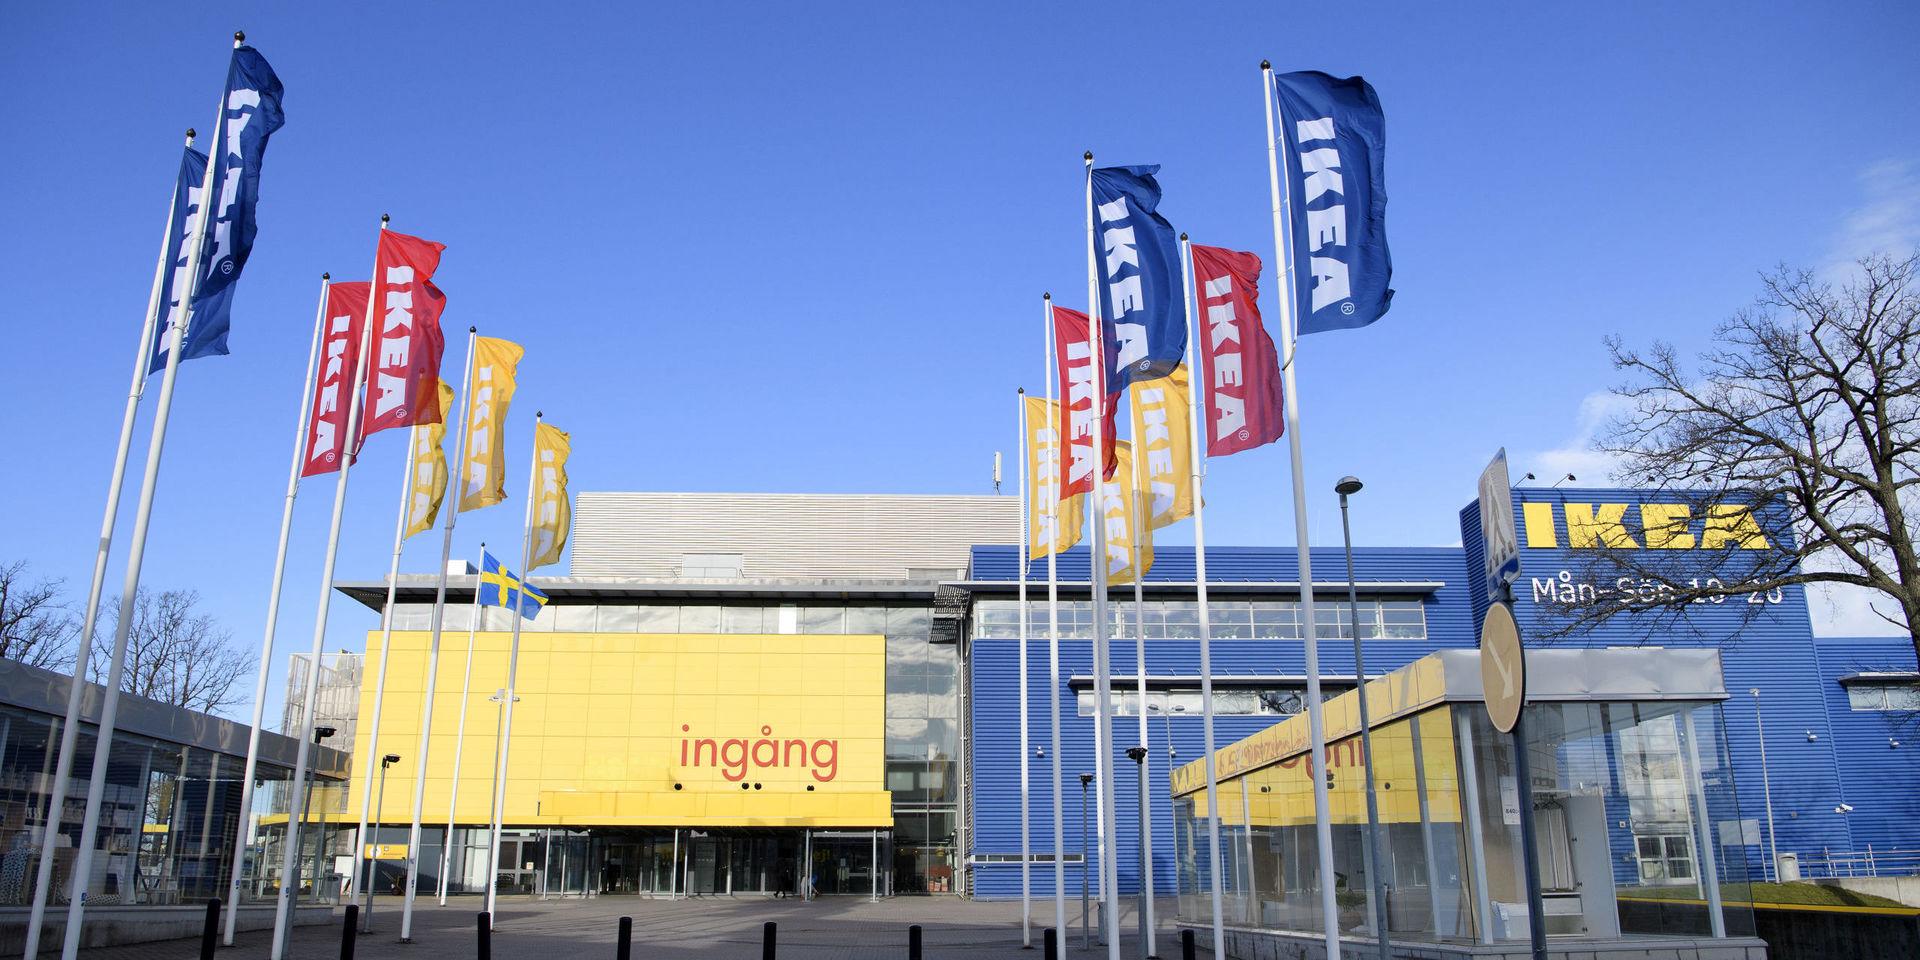 Ikeas varuhus i Kungens kurva. Inom fem år öppnar Ikea fyra nya varuhus i Stockholmsområdet och investerar 1,7 miljarder på befintliga varuhus i området.